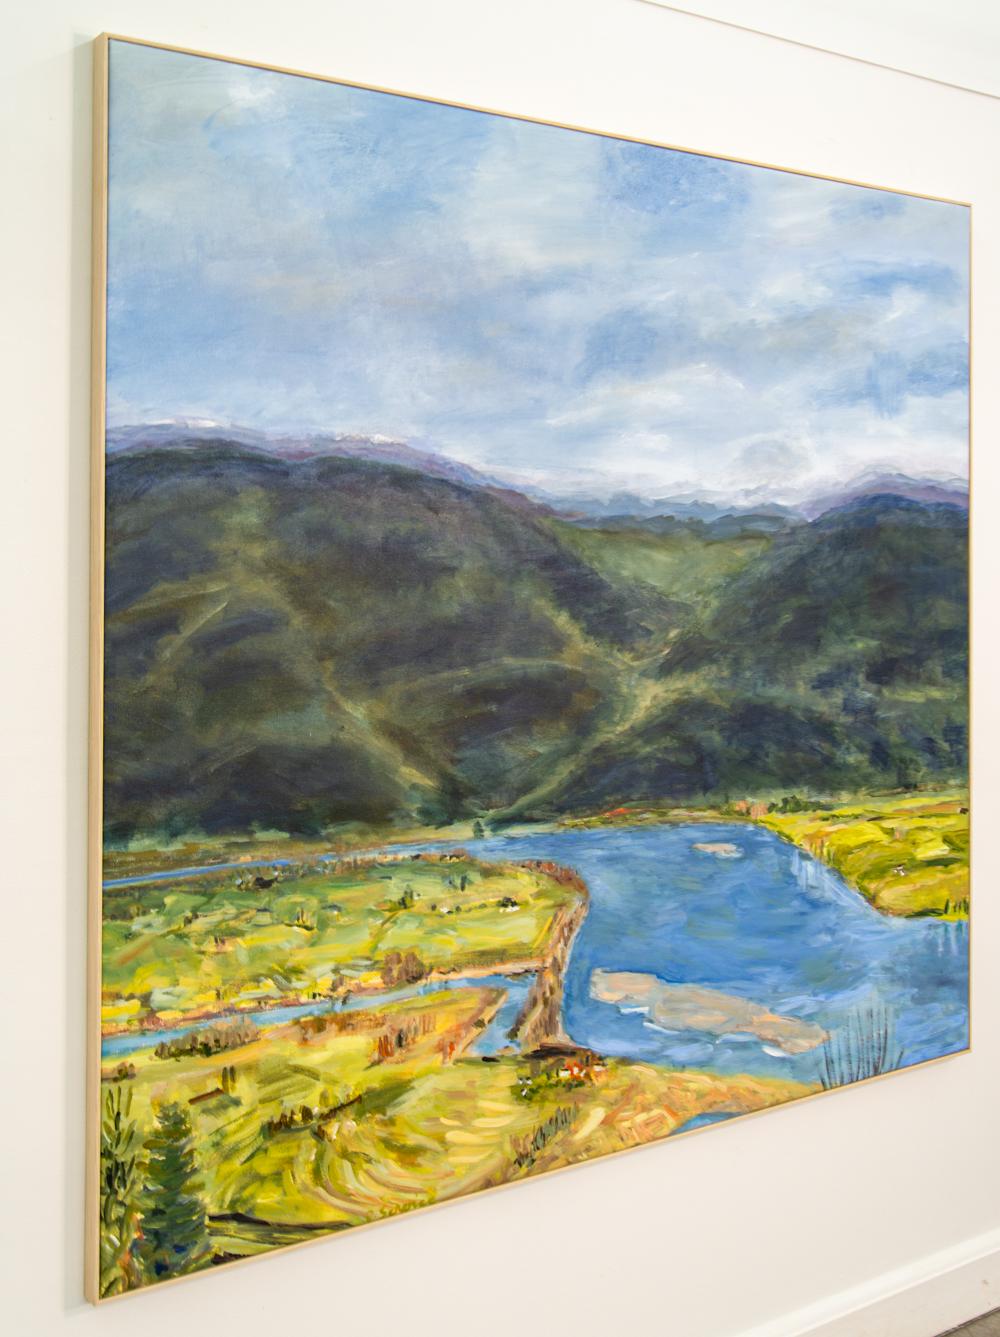 Diese reizvolle Landschaft, die in einem Wandteppich aus satten Farben dargestellt ist, wurde von Kanadas Pat Service gemalt. Die Stadt Mission liegt am Nordufer des Fraser River, der sich durch ein Tal schlängelt. Dunkelgrün und Schwarz stellen die